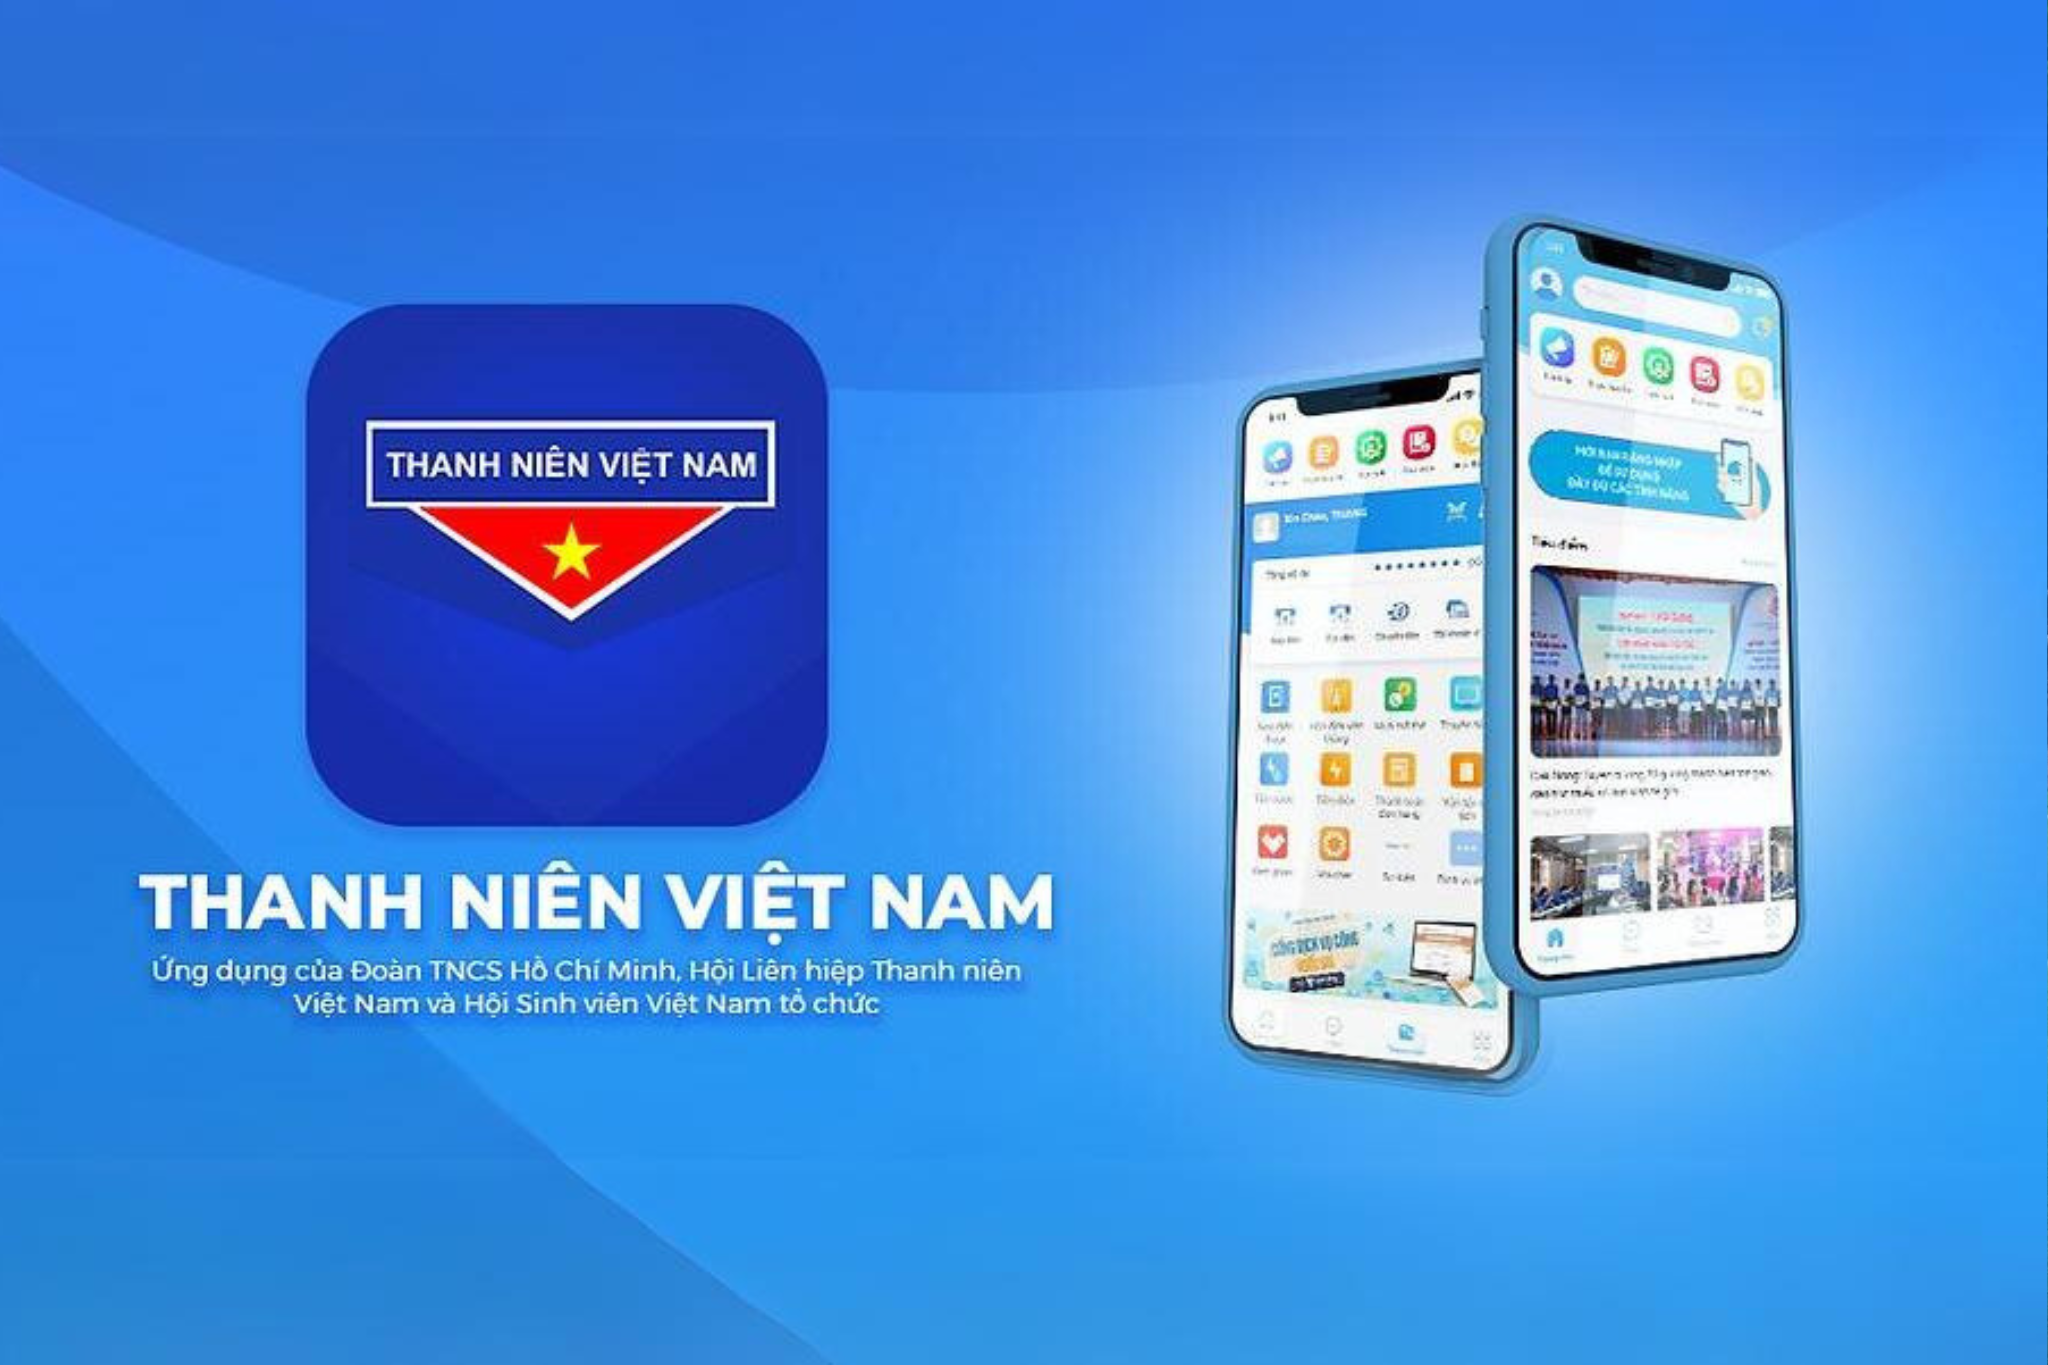 (App Thanh niên Việt Nam) Hướng dẫn đăng ký tài khoản và xác thực thông tin